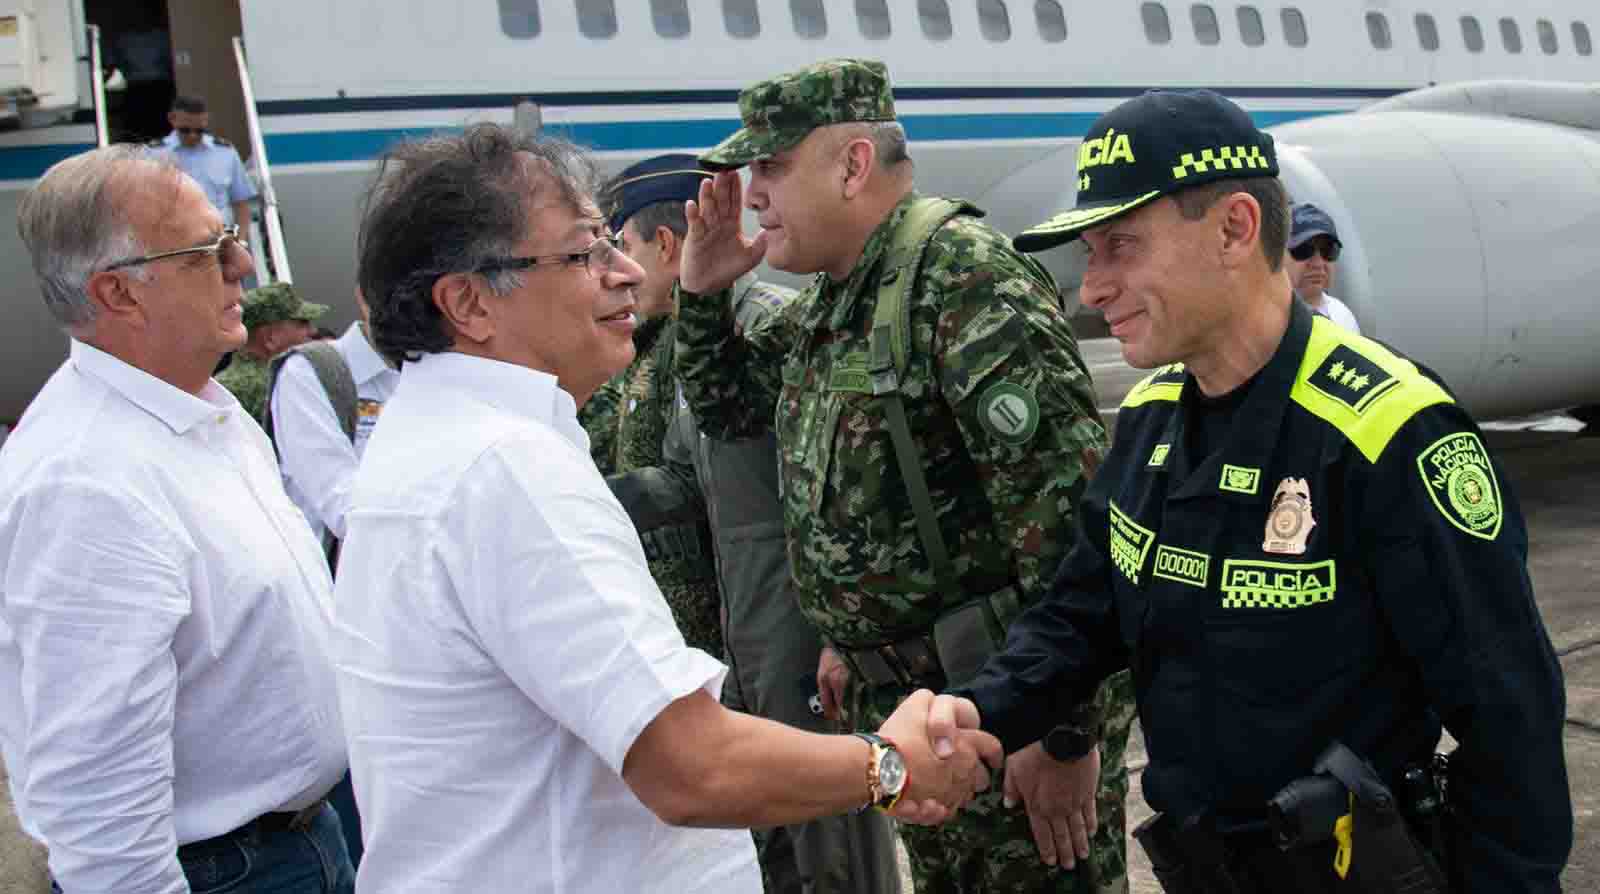 El presidente de Colombia, Gustavo Petro, llegó al departamento de Bolívar, donde se desarrolló un Consejo de Seguridad para evaluar la situación de orden público en dicha región. Foto: Twitter.